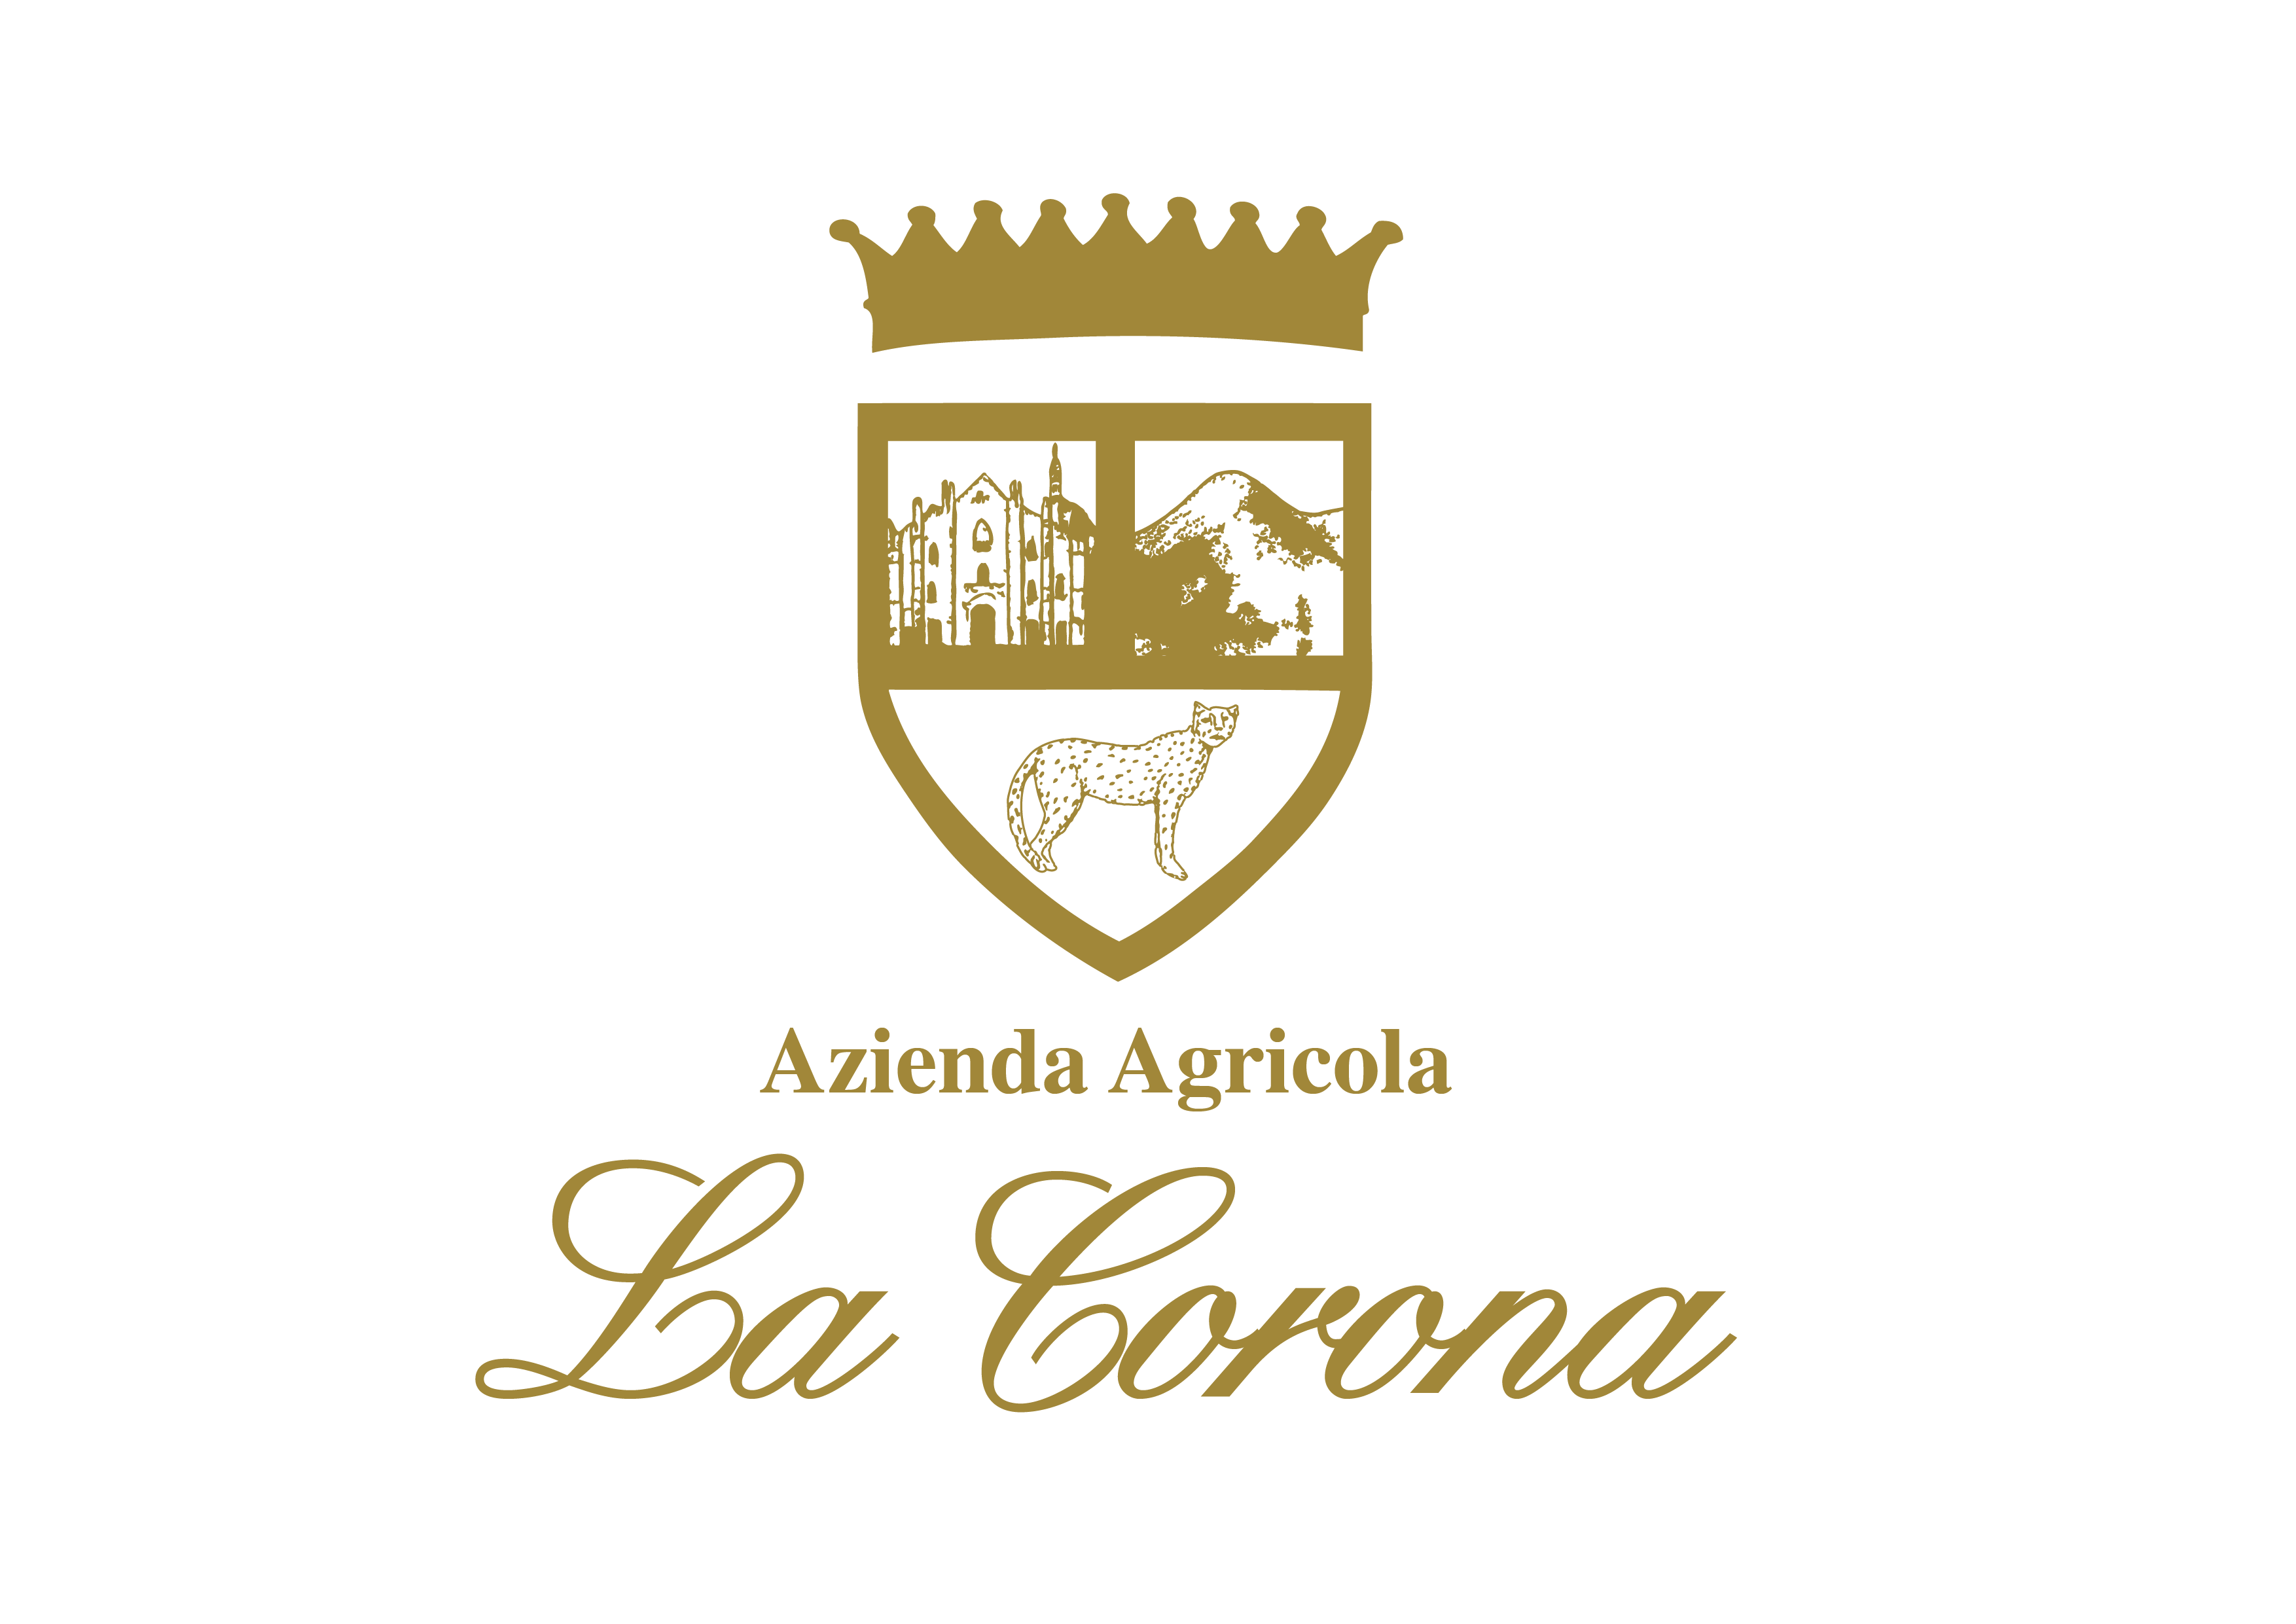 A. A. La Corona - DUO LA CORONA su Dilloconilvino.it